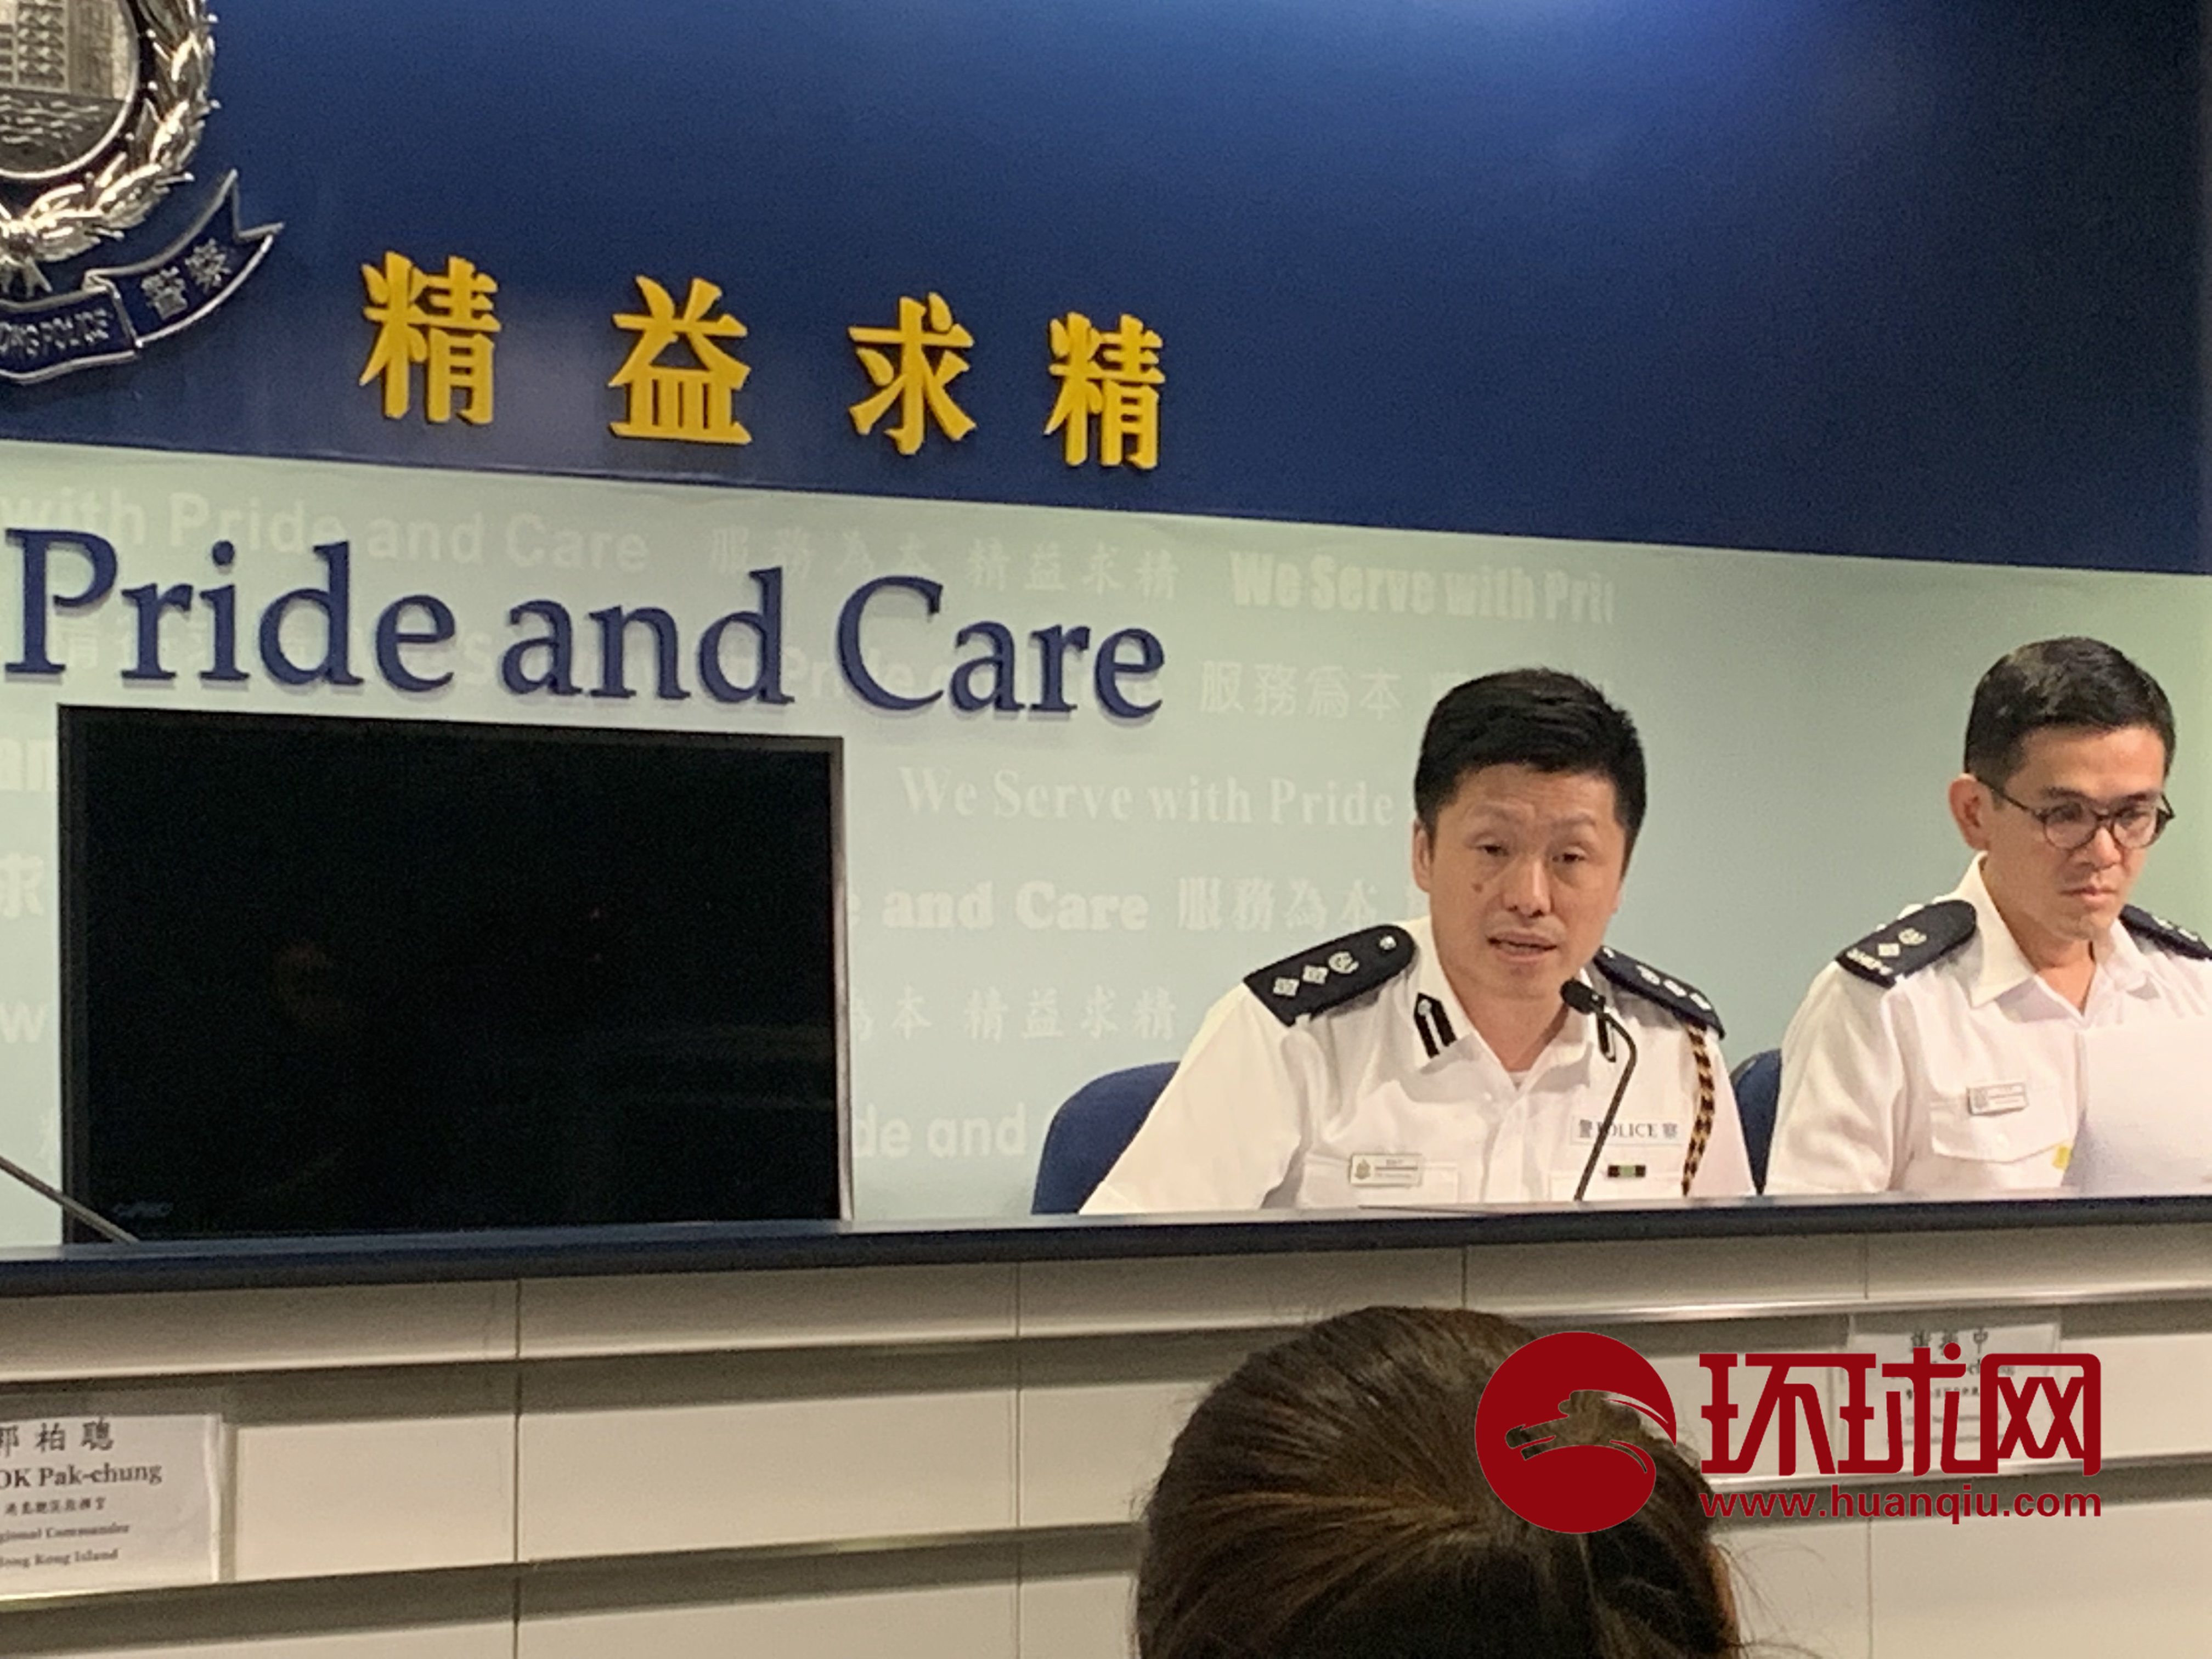 香港警方发布会上,警察公共关系科高级警司谢振中,关注到有警务人员